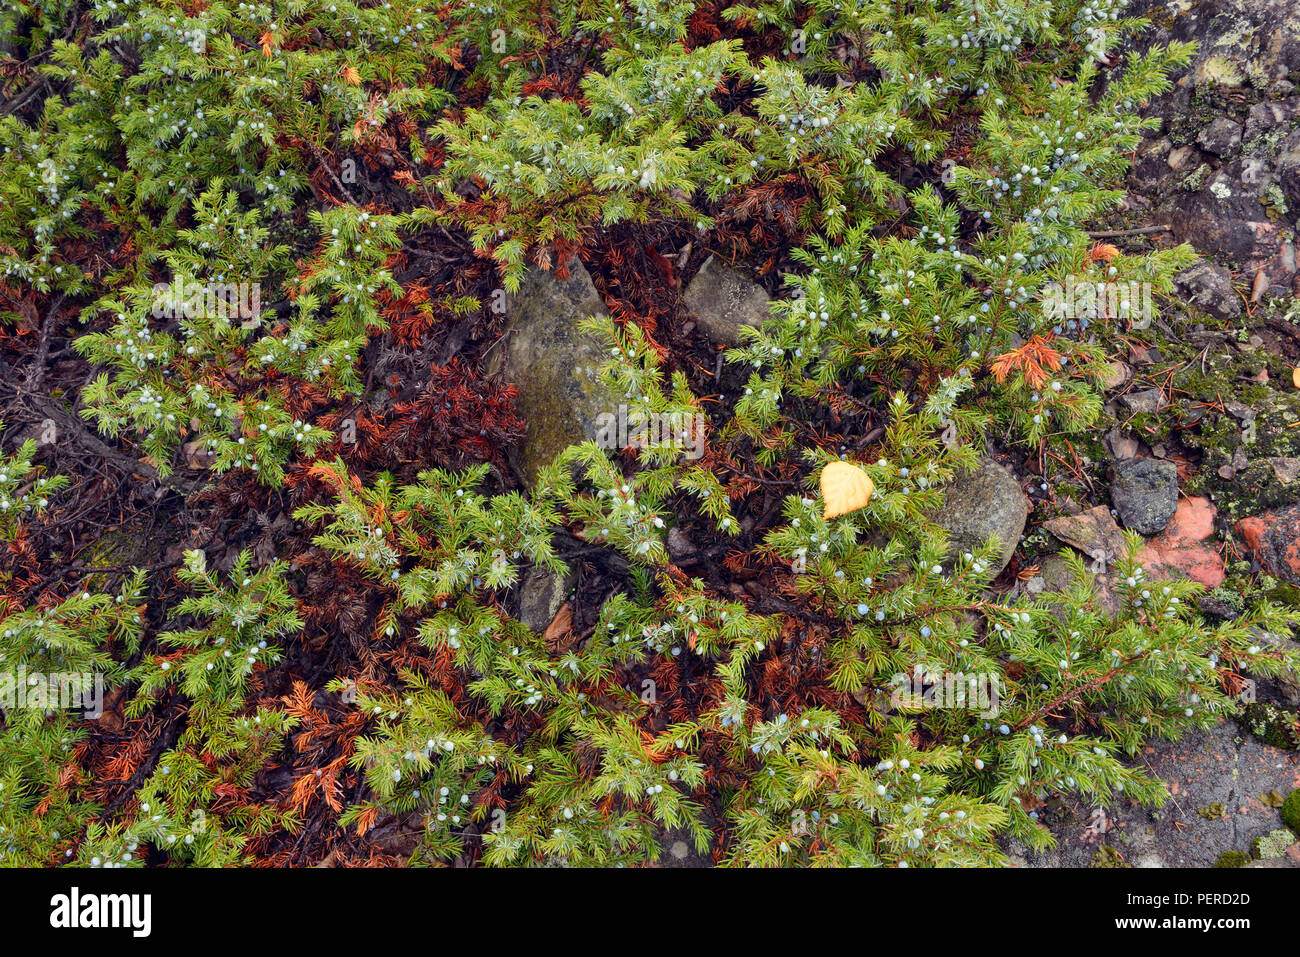 Juniper bush and berries, Yellowknife, Northwest Territories, Canada Stock Photo